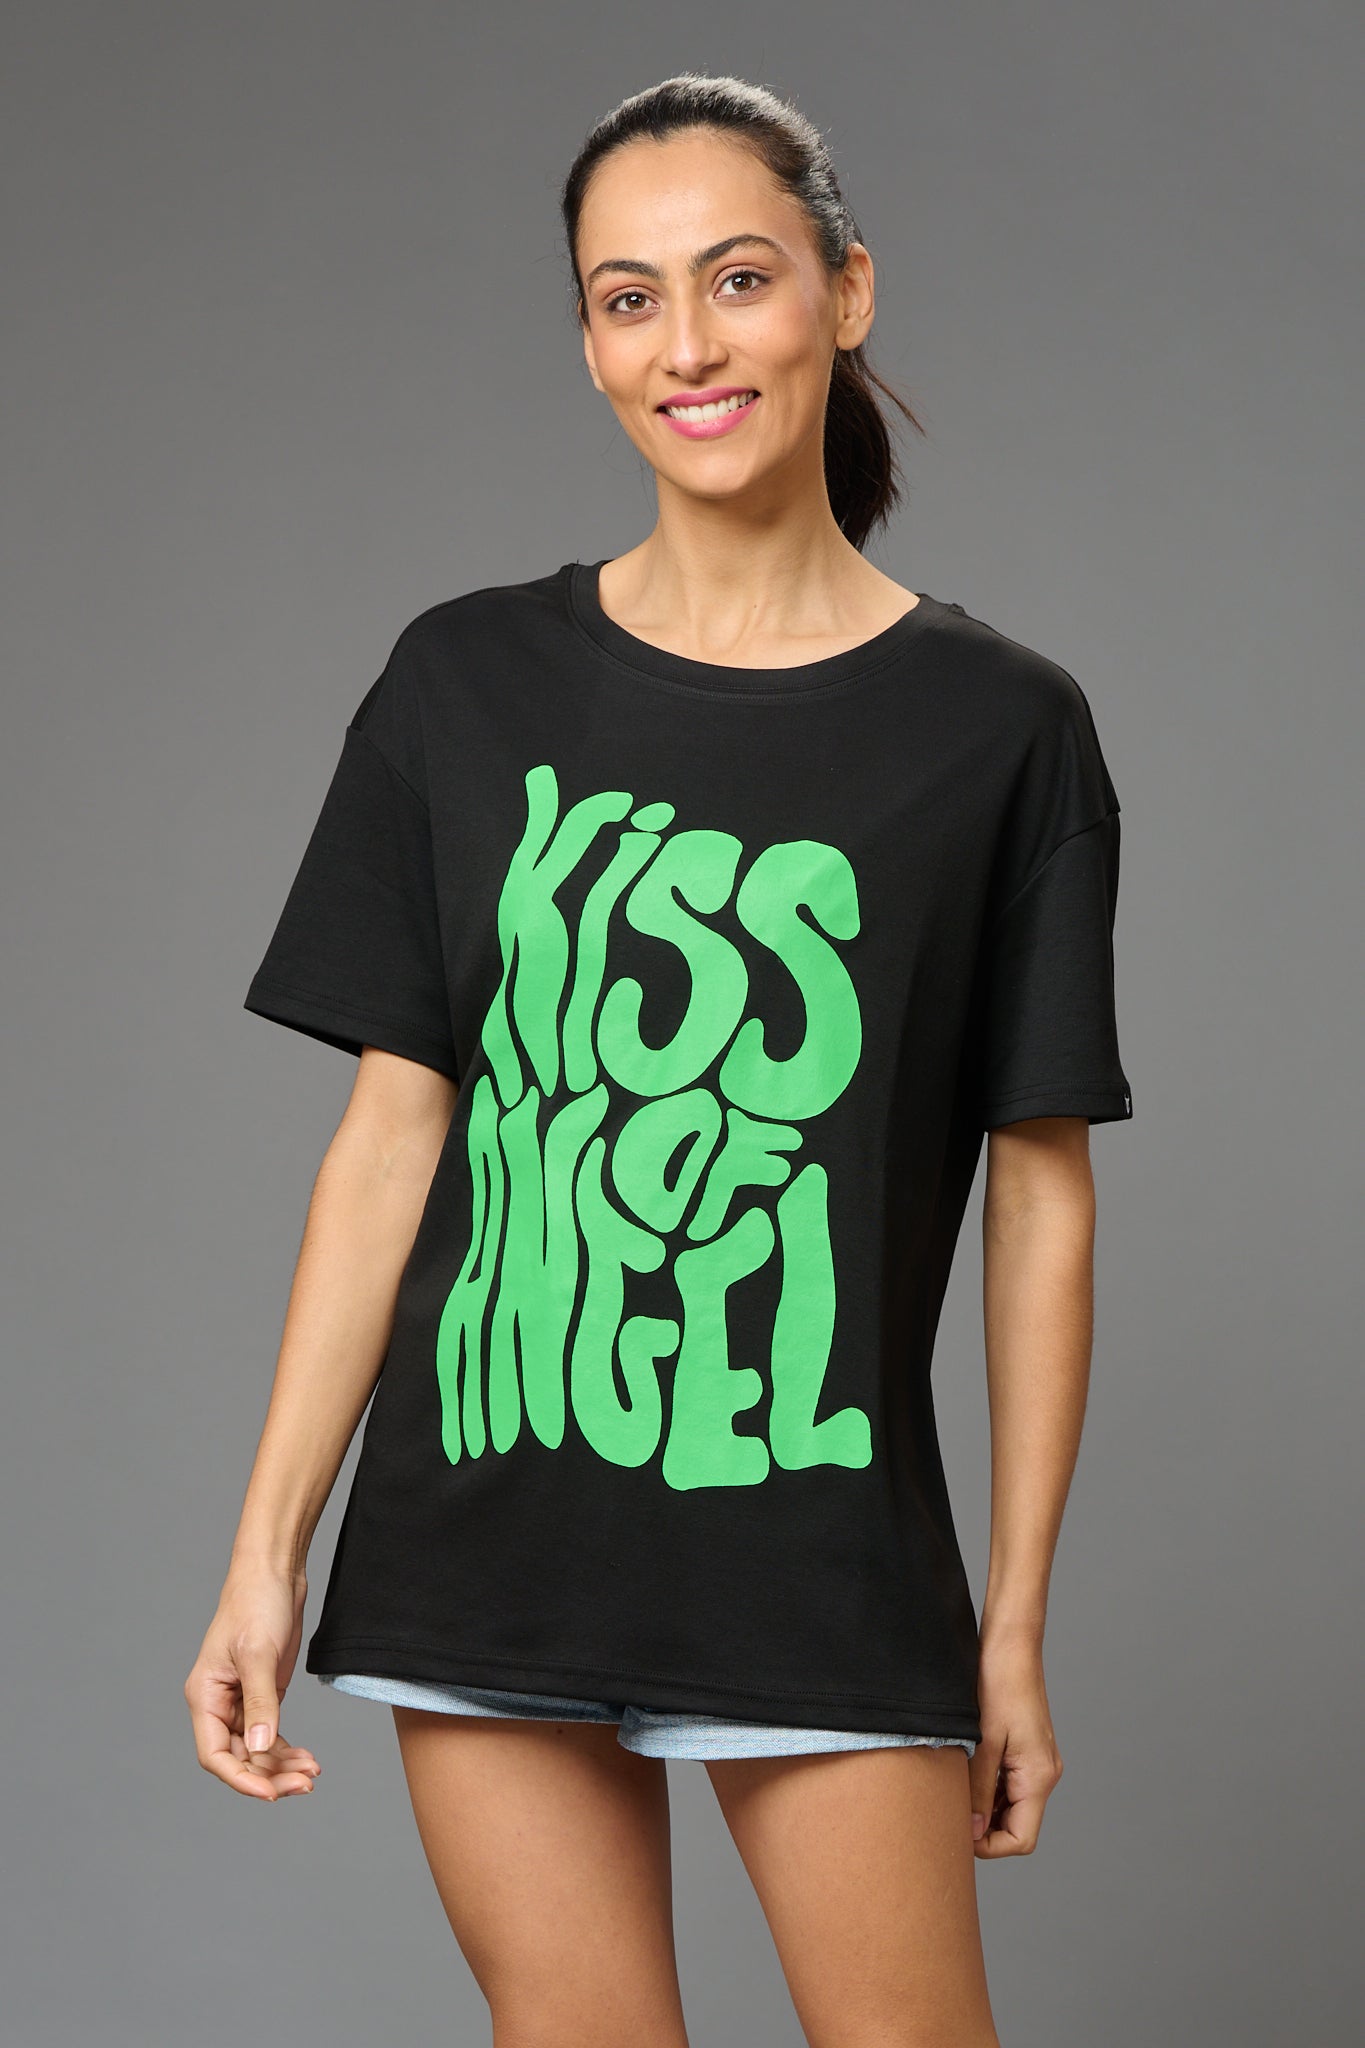 Kiss of An Angel Printed Black Oversized T-Shirt for Women - Go Devil